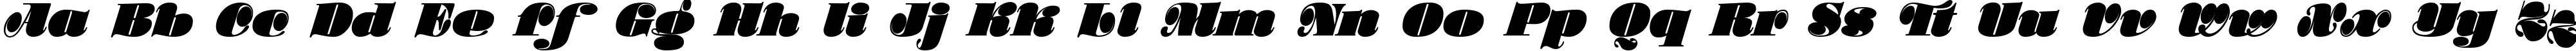 Пример написания английского алфавита шрифтом Stilla